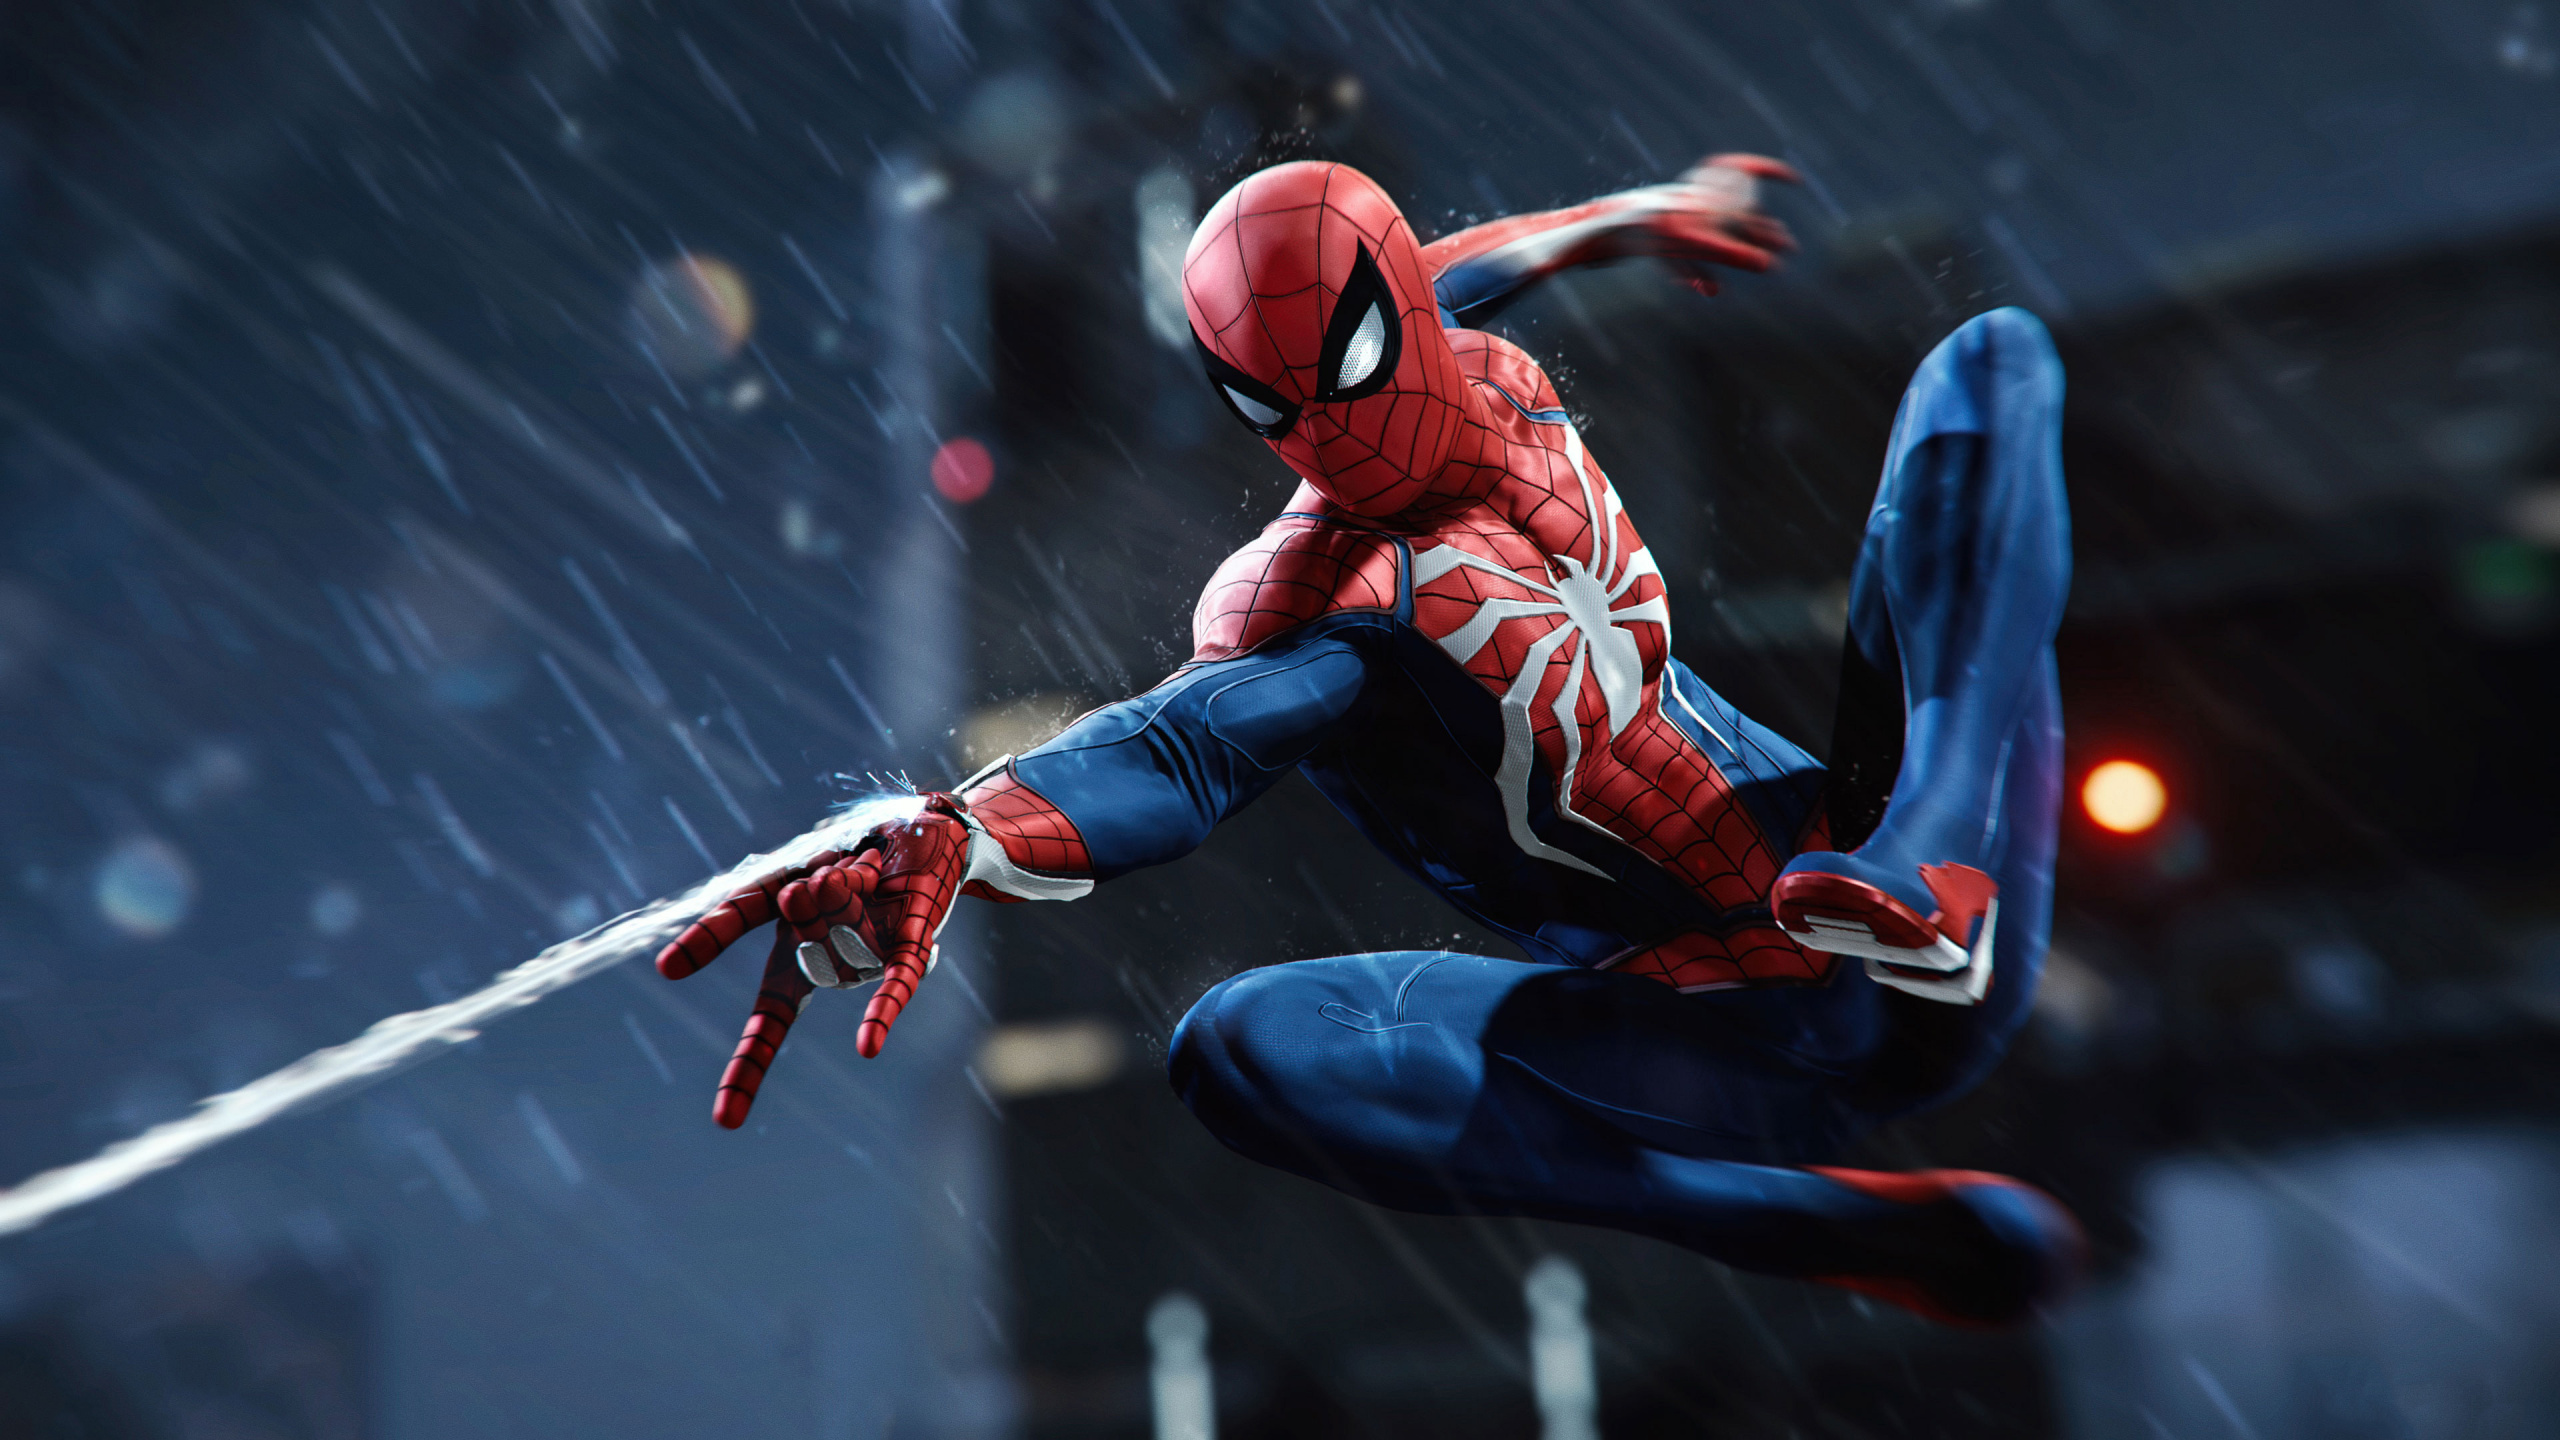 Spider-man, Insomniac Games, Superhéroe, Figura de Acción, Personaje de Ficción. Wallpaper in 2560x1440 Resolution